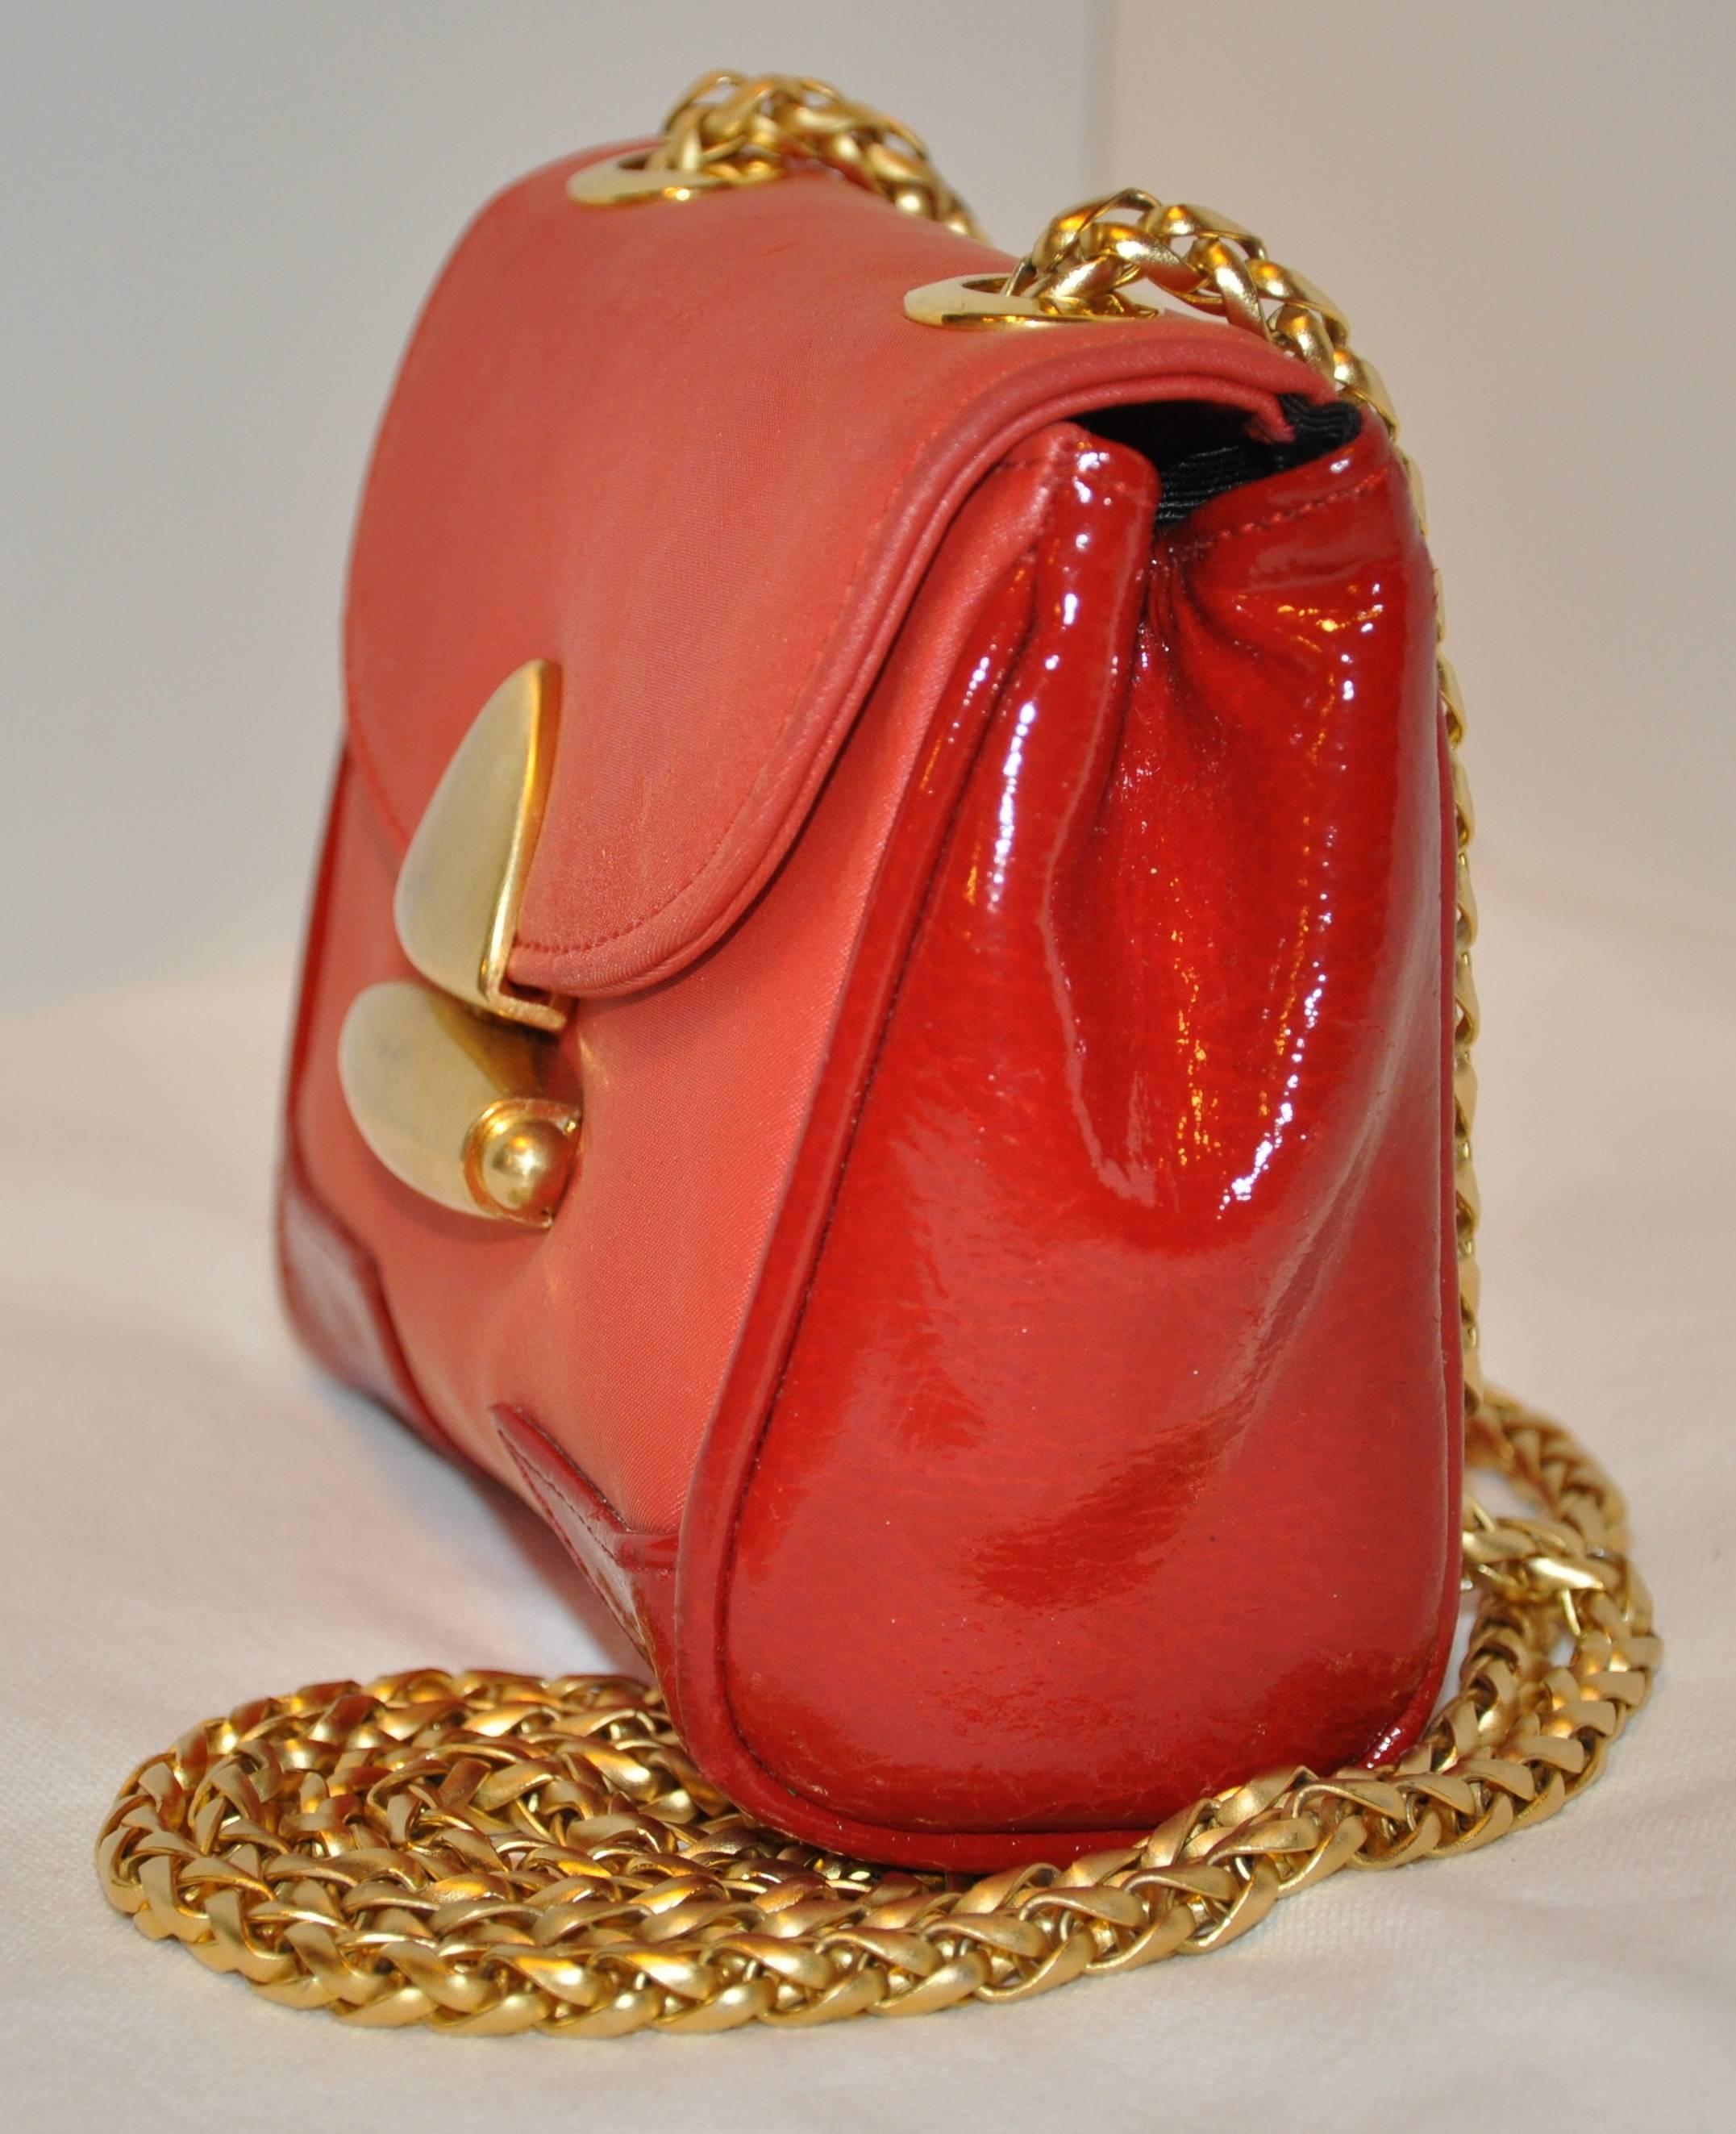        Le sac à bandoulière du soir MCM, merveilleusement détaillé, de couleur rouge avec des accents de cuir de veau verni rouge, est complété par une quincaillerie en or doré sur l'ouverture du fermoir ainsi que par des bretelles détaillées